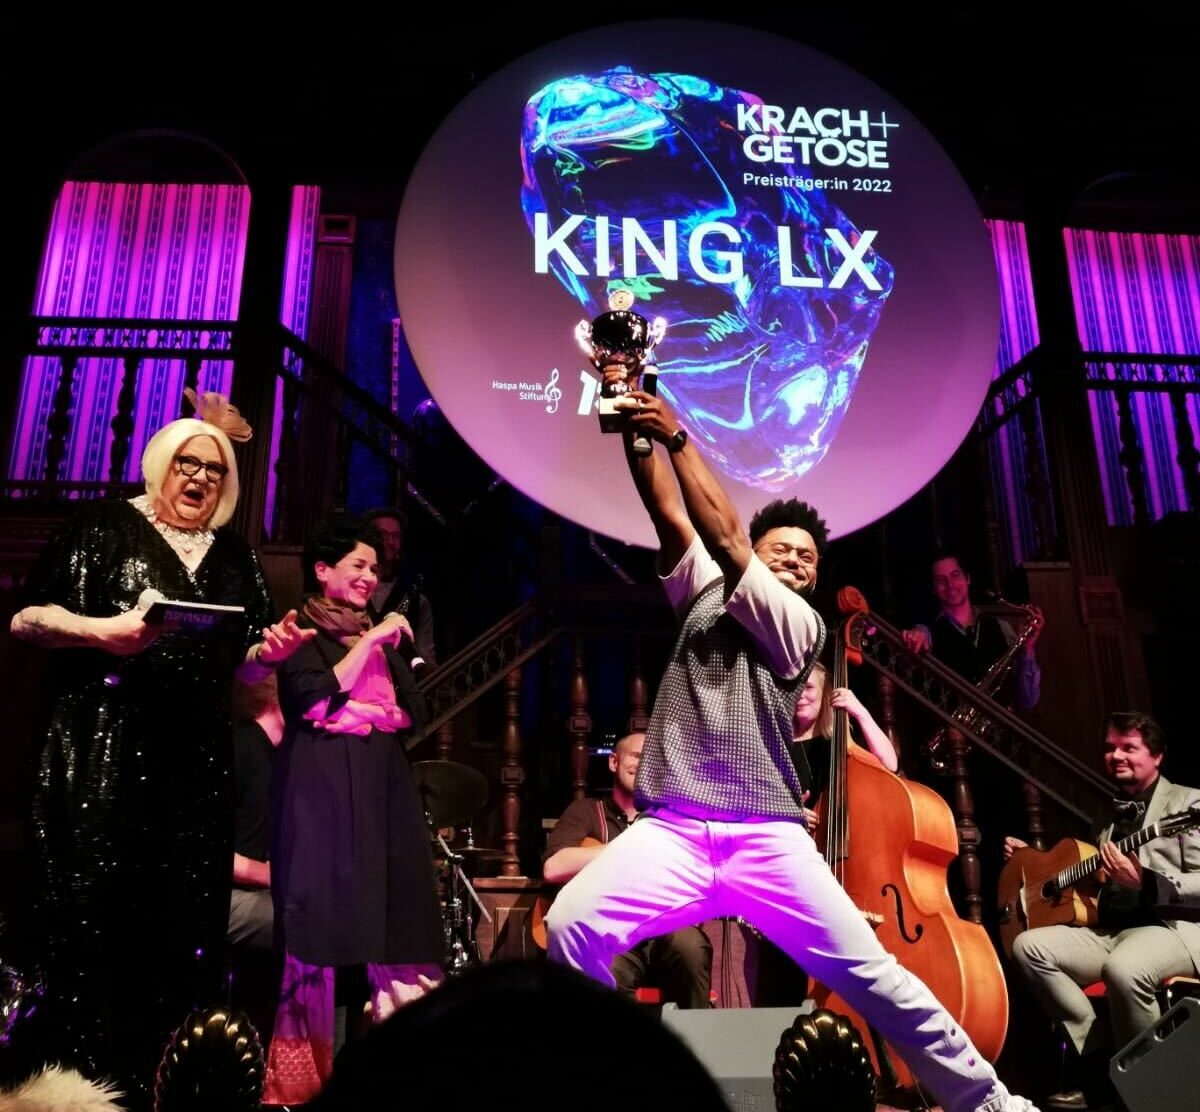 Die Preisverleihung fand am Dienstag (20.6.) im Imperial-Theater statt - hier freut sich King LX gerade über seinen Preis. Foto: Basti Müller